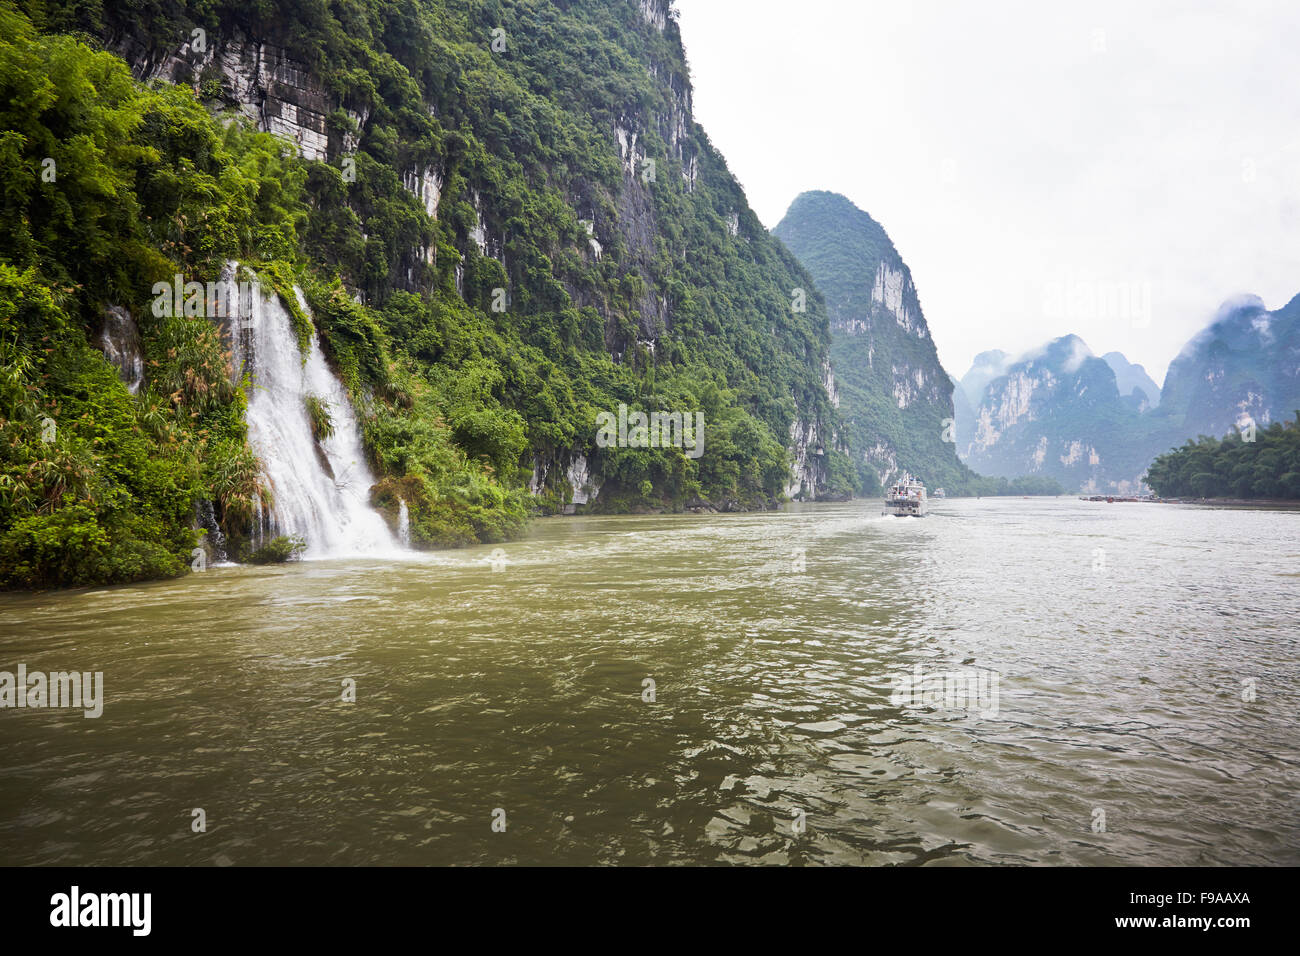 Li River, China Stock Photo